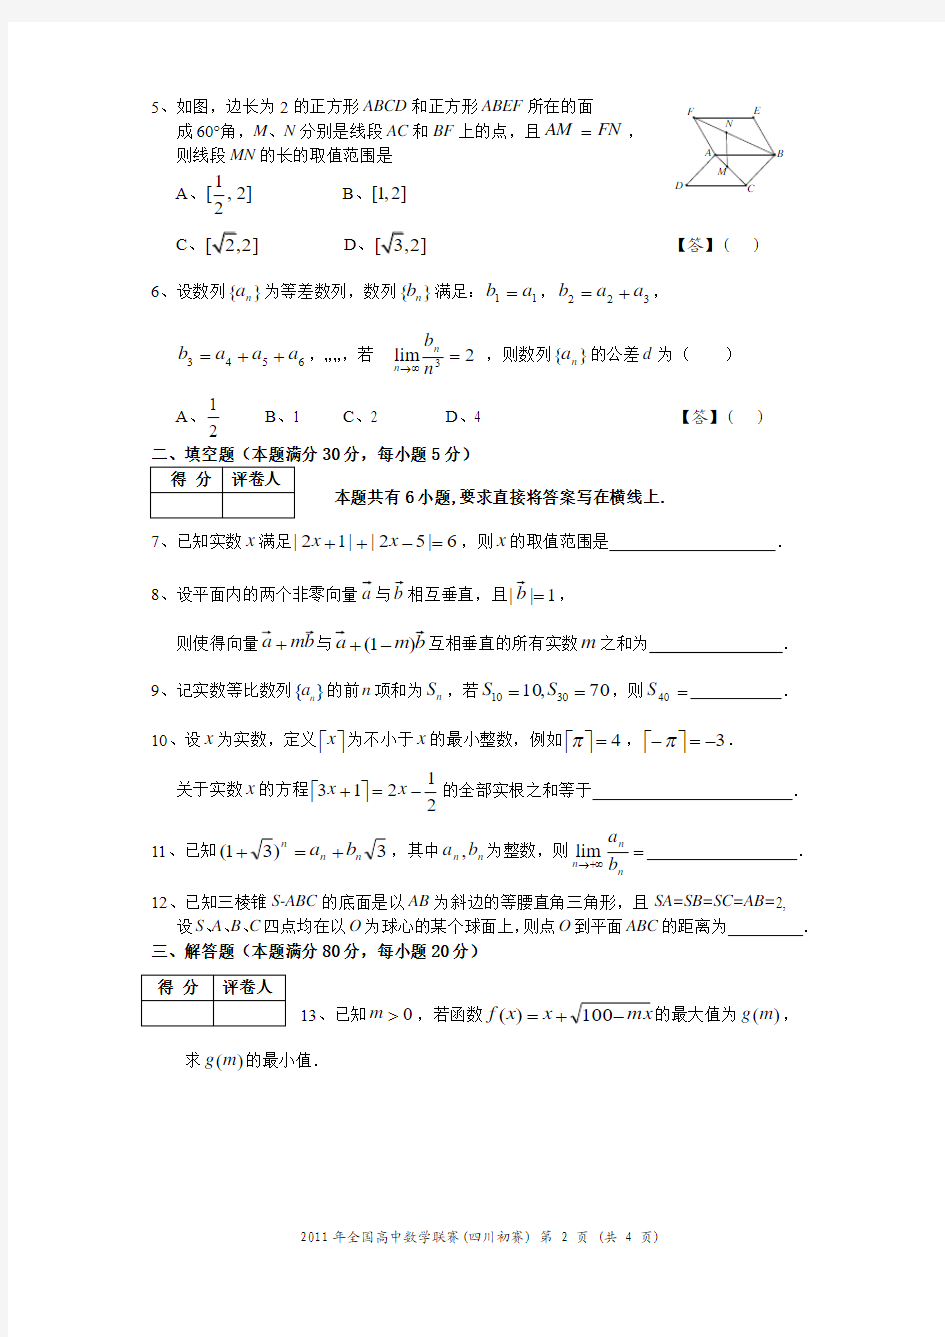 2011年高中数学联赛四川预赛试题